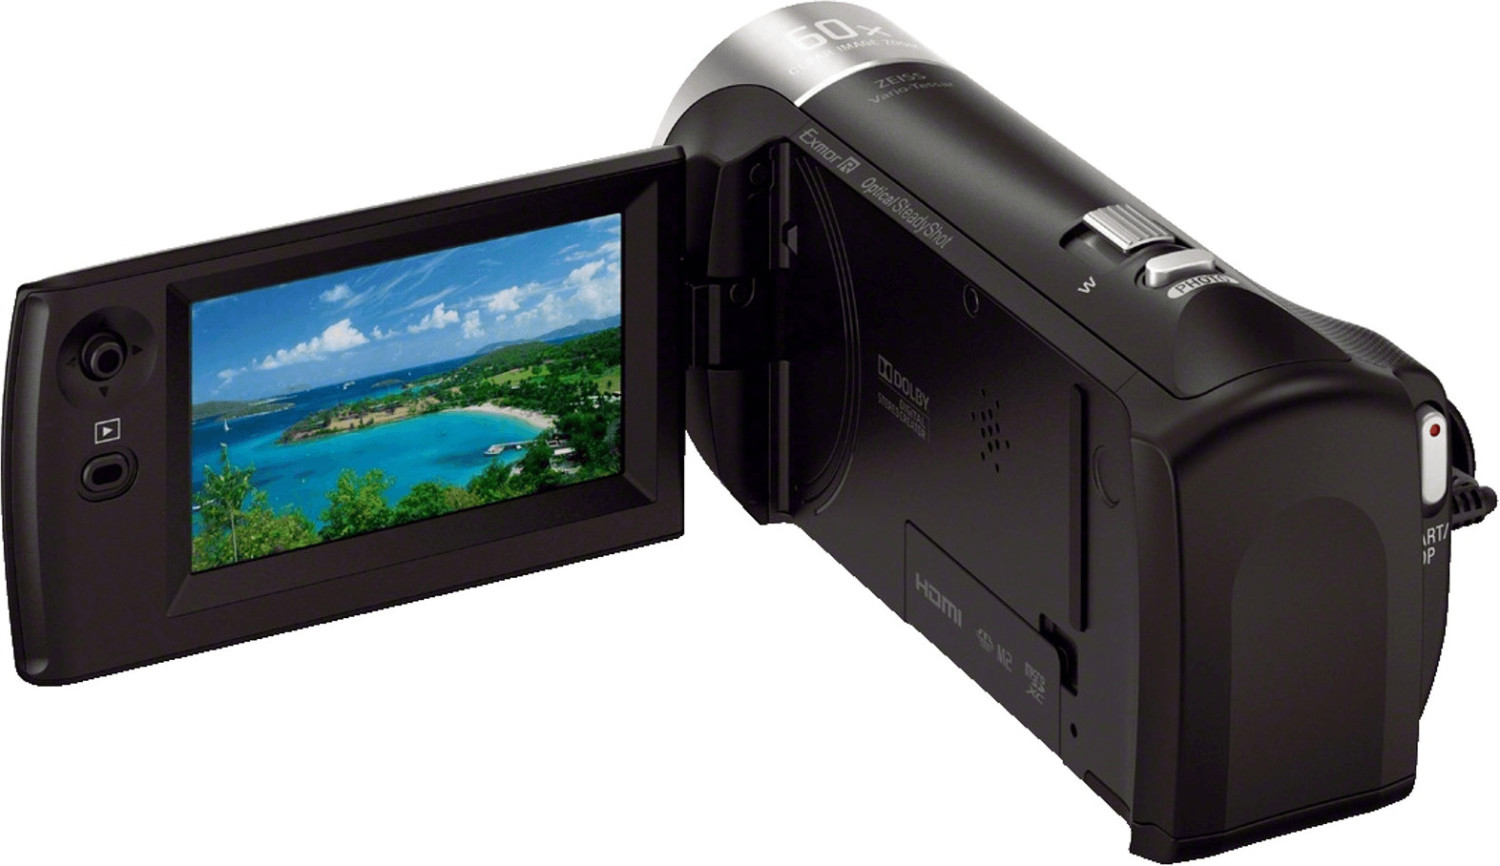 Caméscope Sony HDR-CX405 Noir - Caméscope à carte mémoire